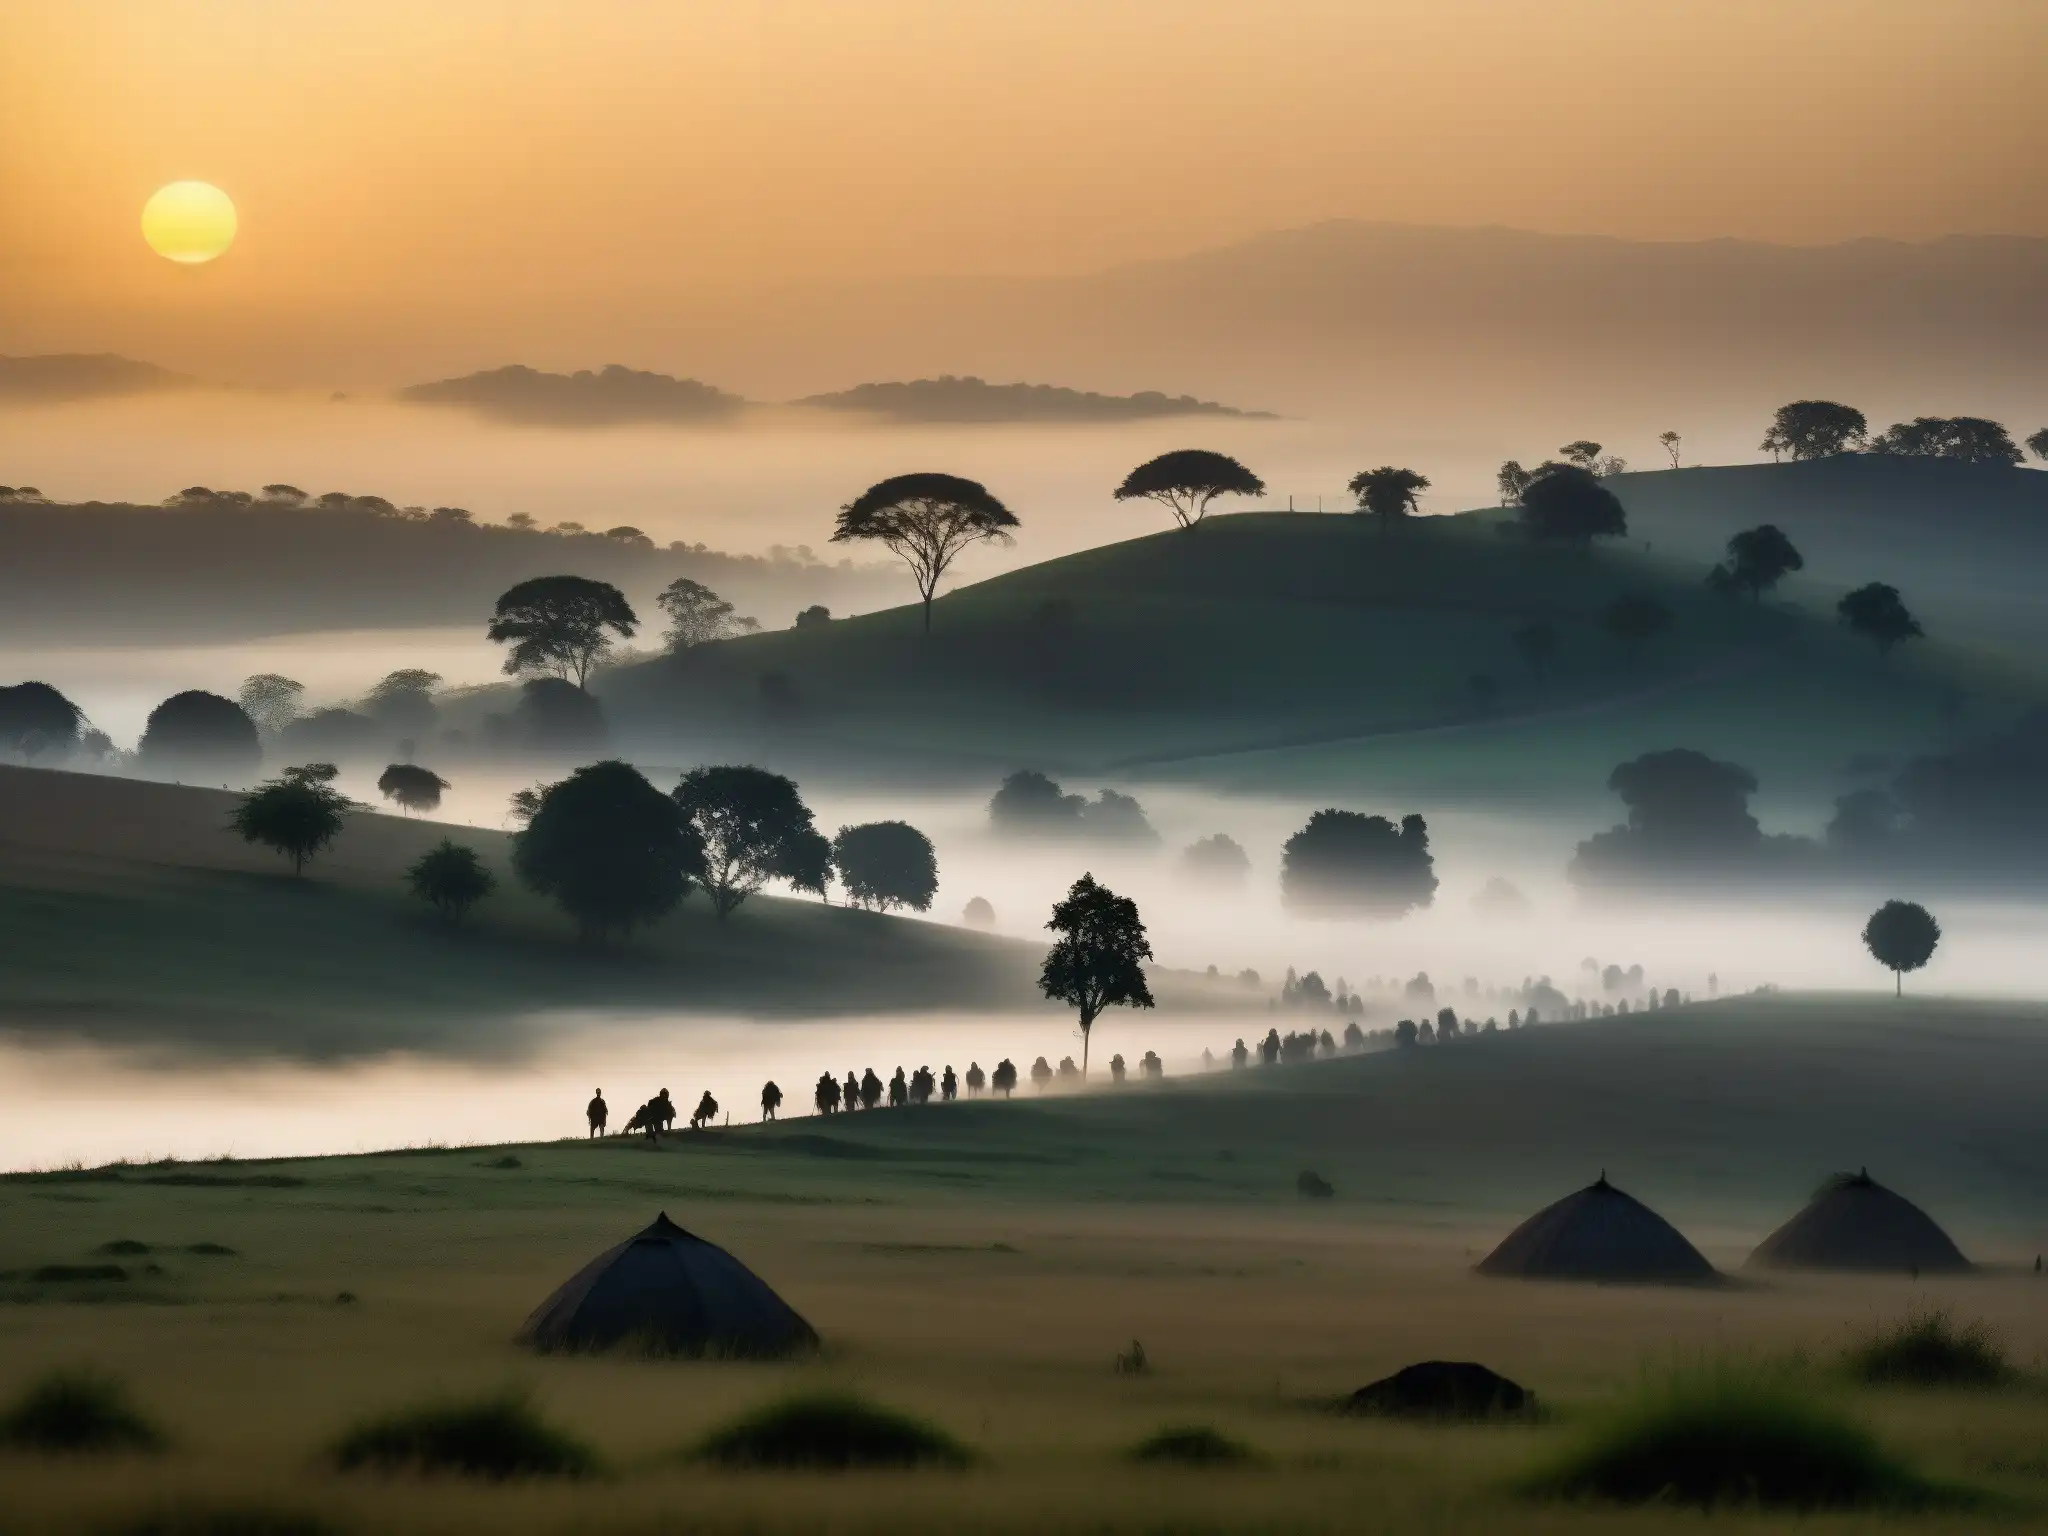 Imagen enigmática de paisaje neblinoso en Jatinga al atardecer, con siluetas de árboles y colinas